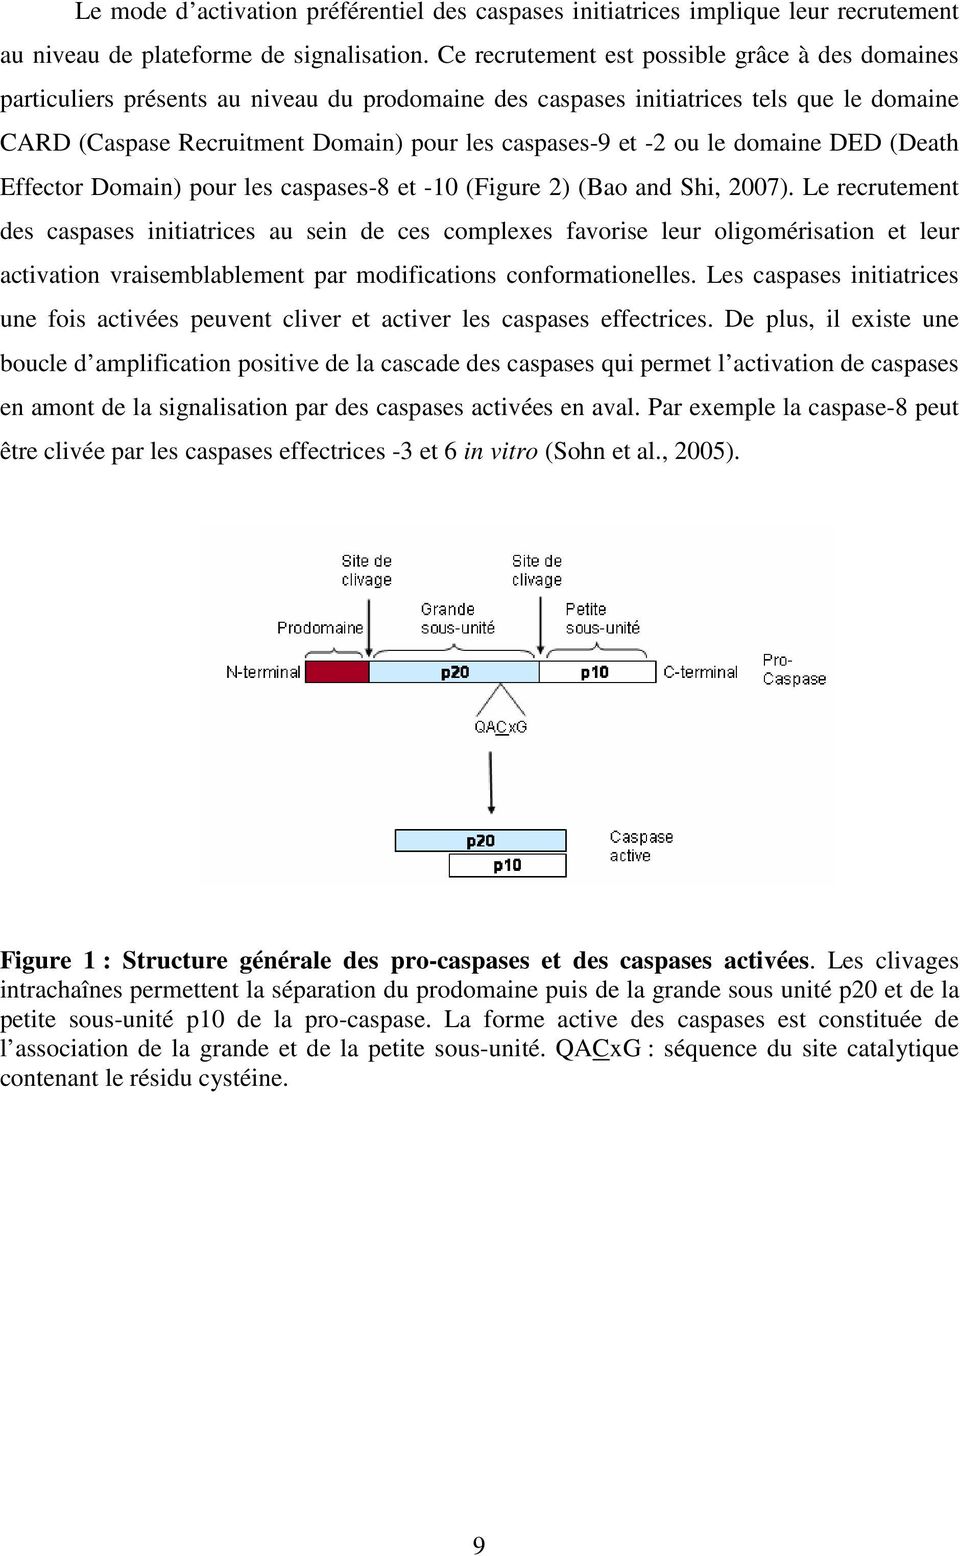 -2 ou le domaine DED (Death Effector Domain) pour les caspases-8 et -10 (Figure 2) (Bao and Shi, 2007).